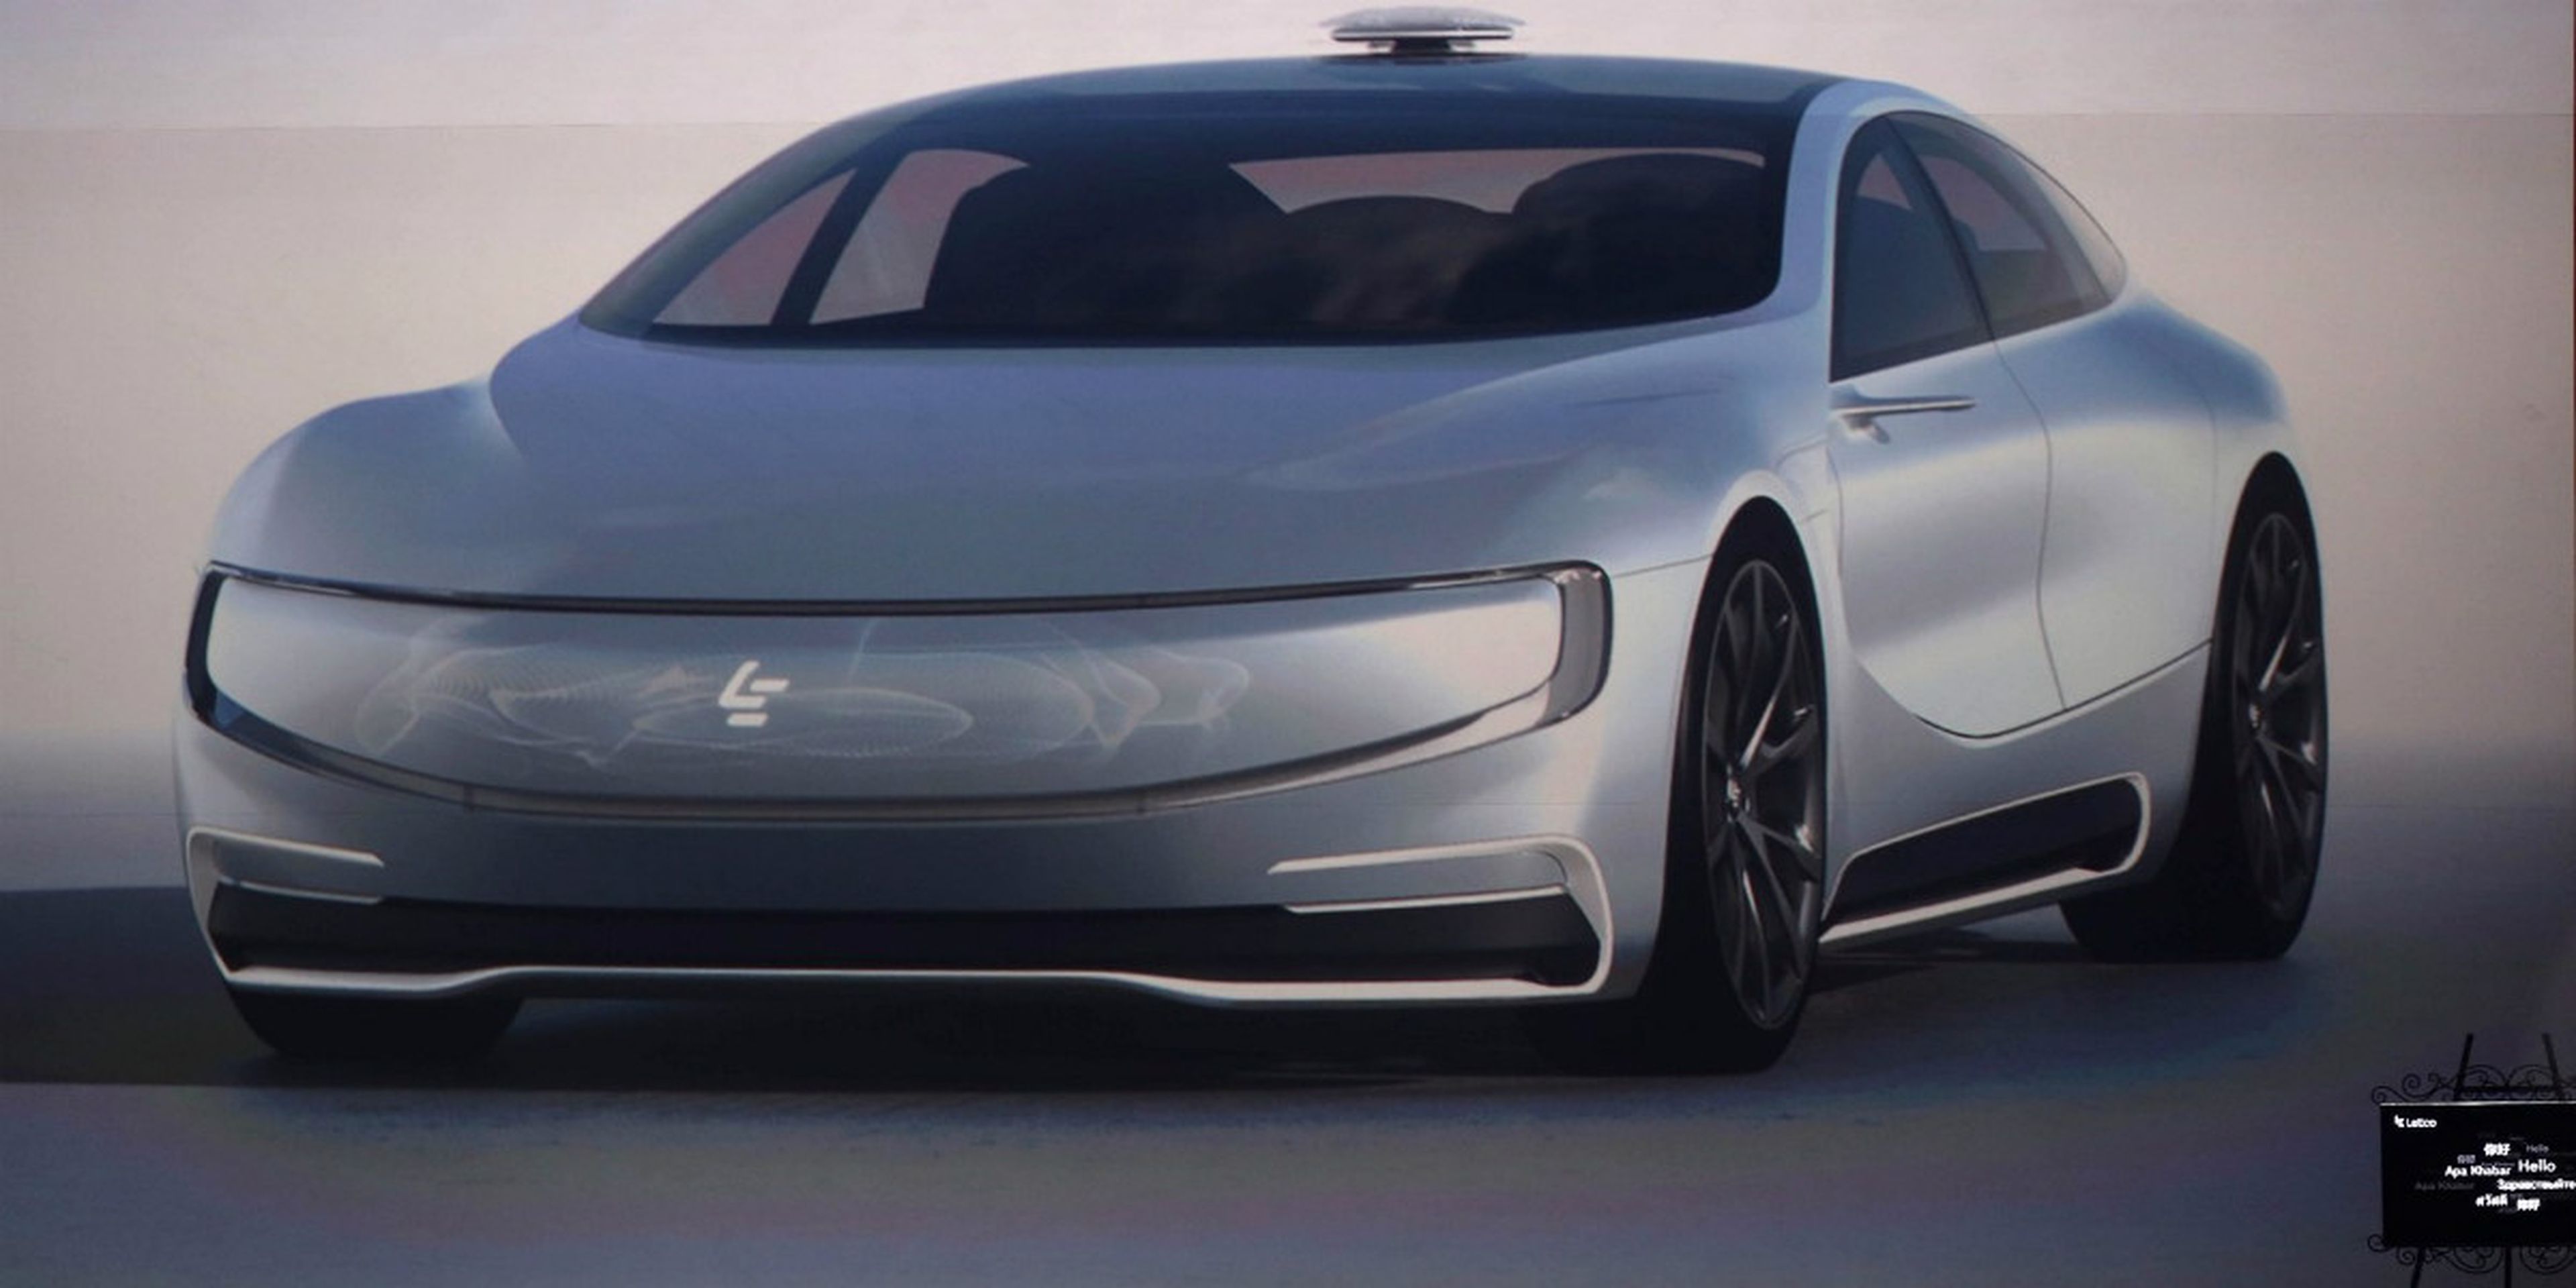 La compañía china de internet LeEco revela su modelo de vehículo eléctrico sin conductor LeSee.